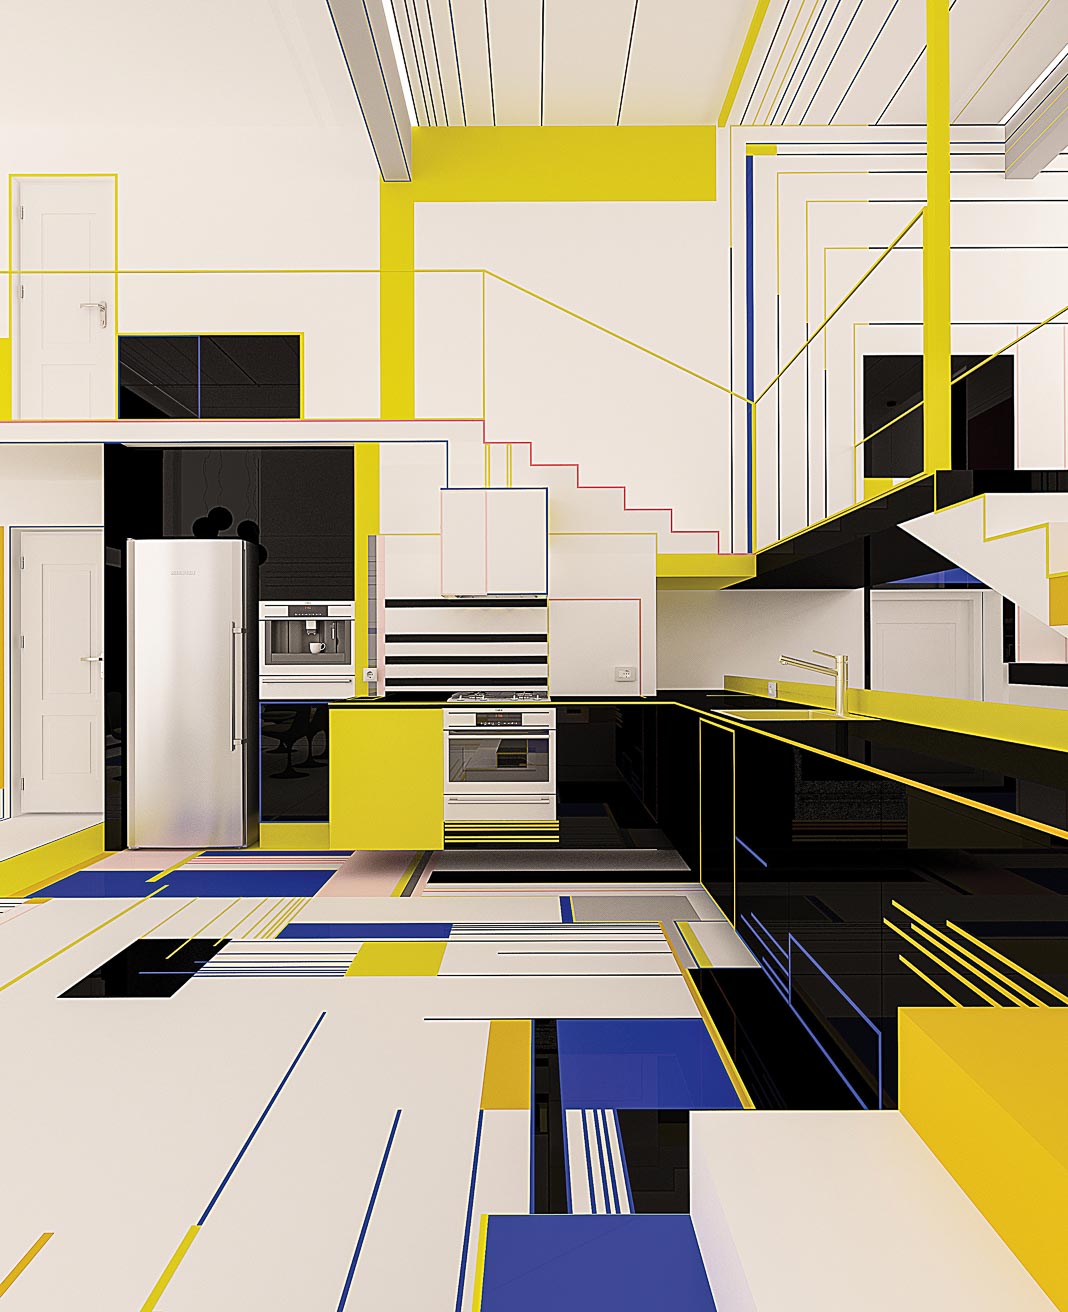 Bữa điểm tâm với Mondrian - Sống với sắc màu Piet Mondrian 11